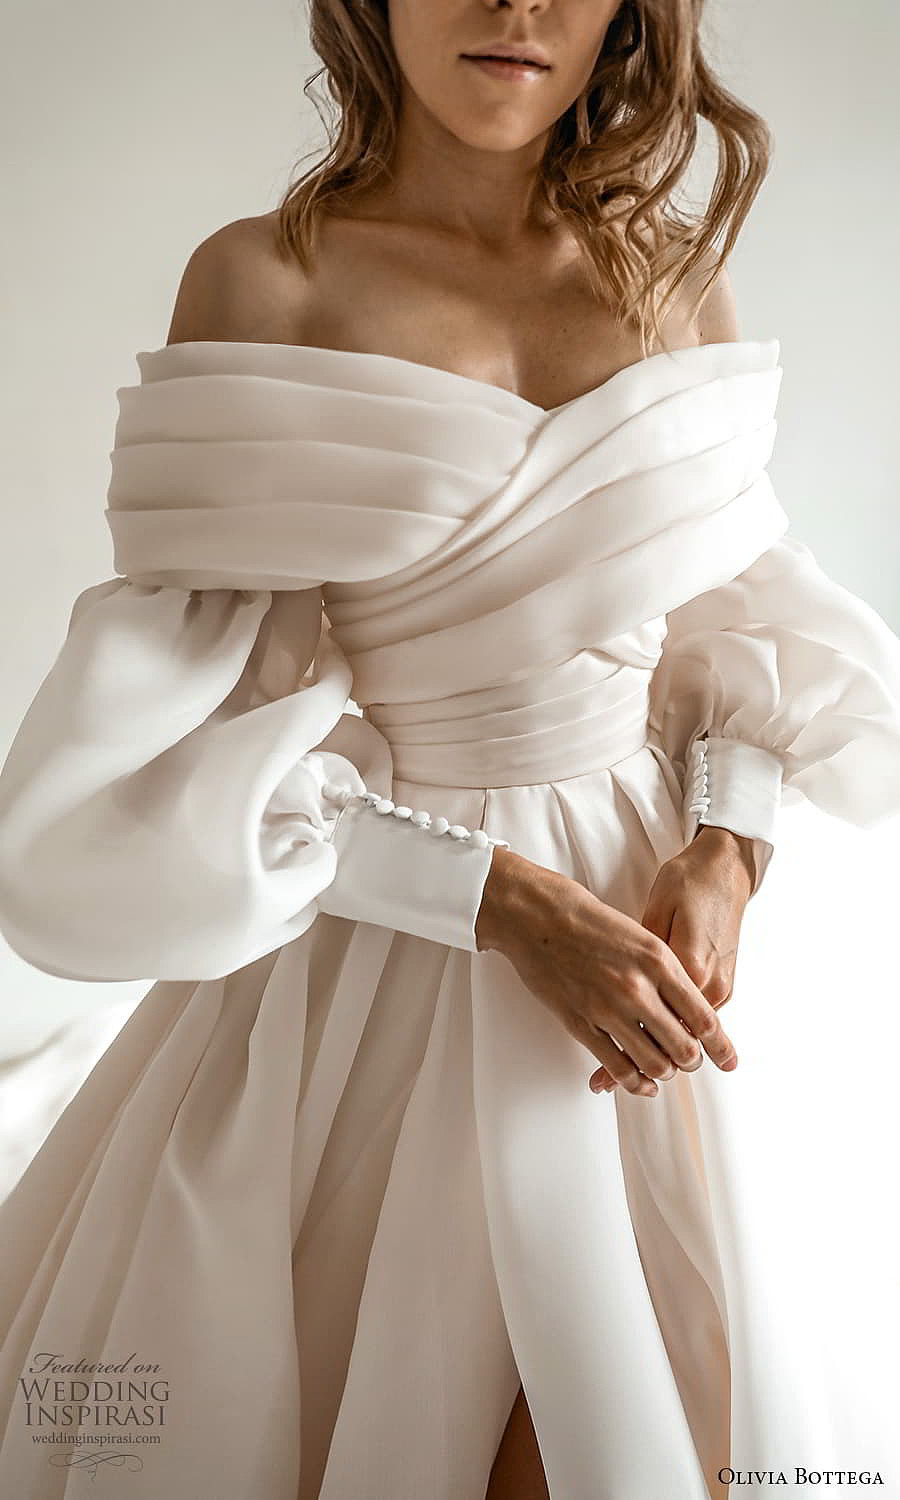 Olivia Bottega Pret-a-Porter婚纱系列 独一无二华丽嫁衣 - 21